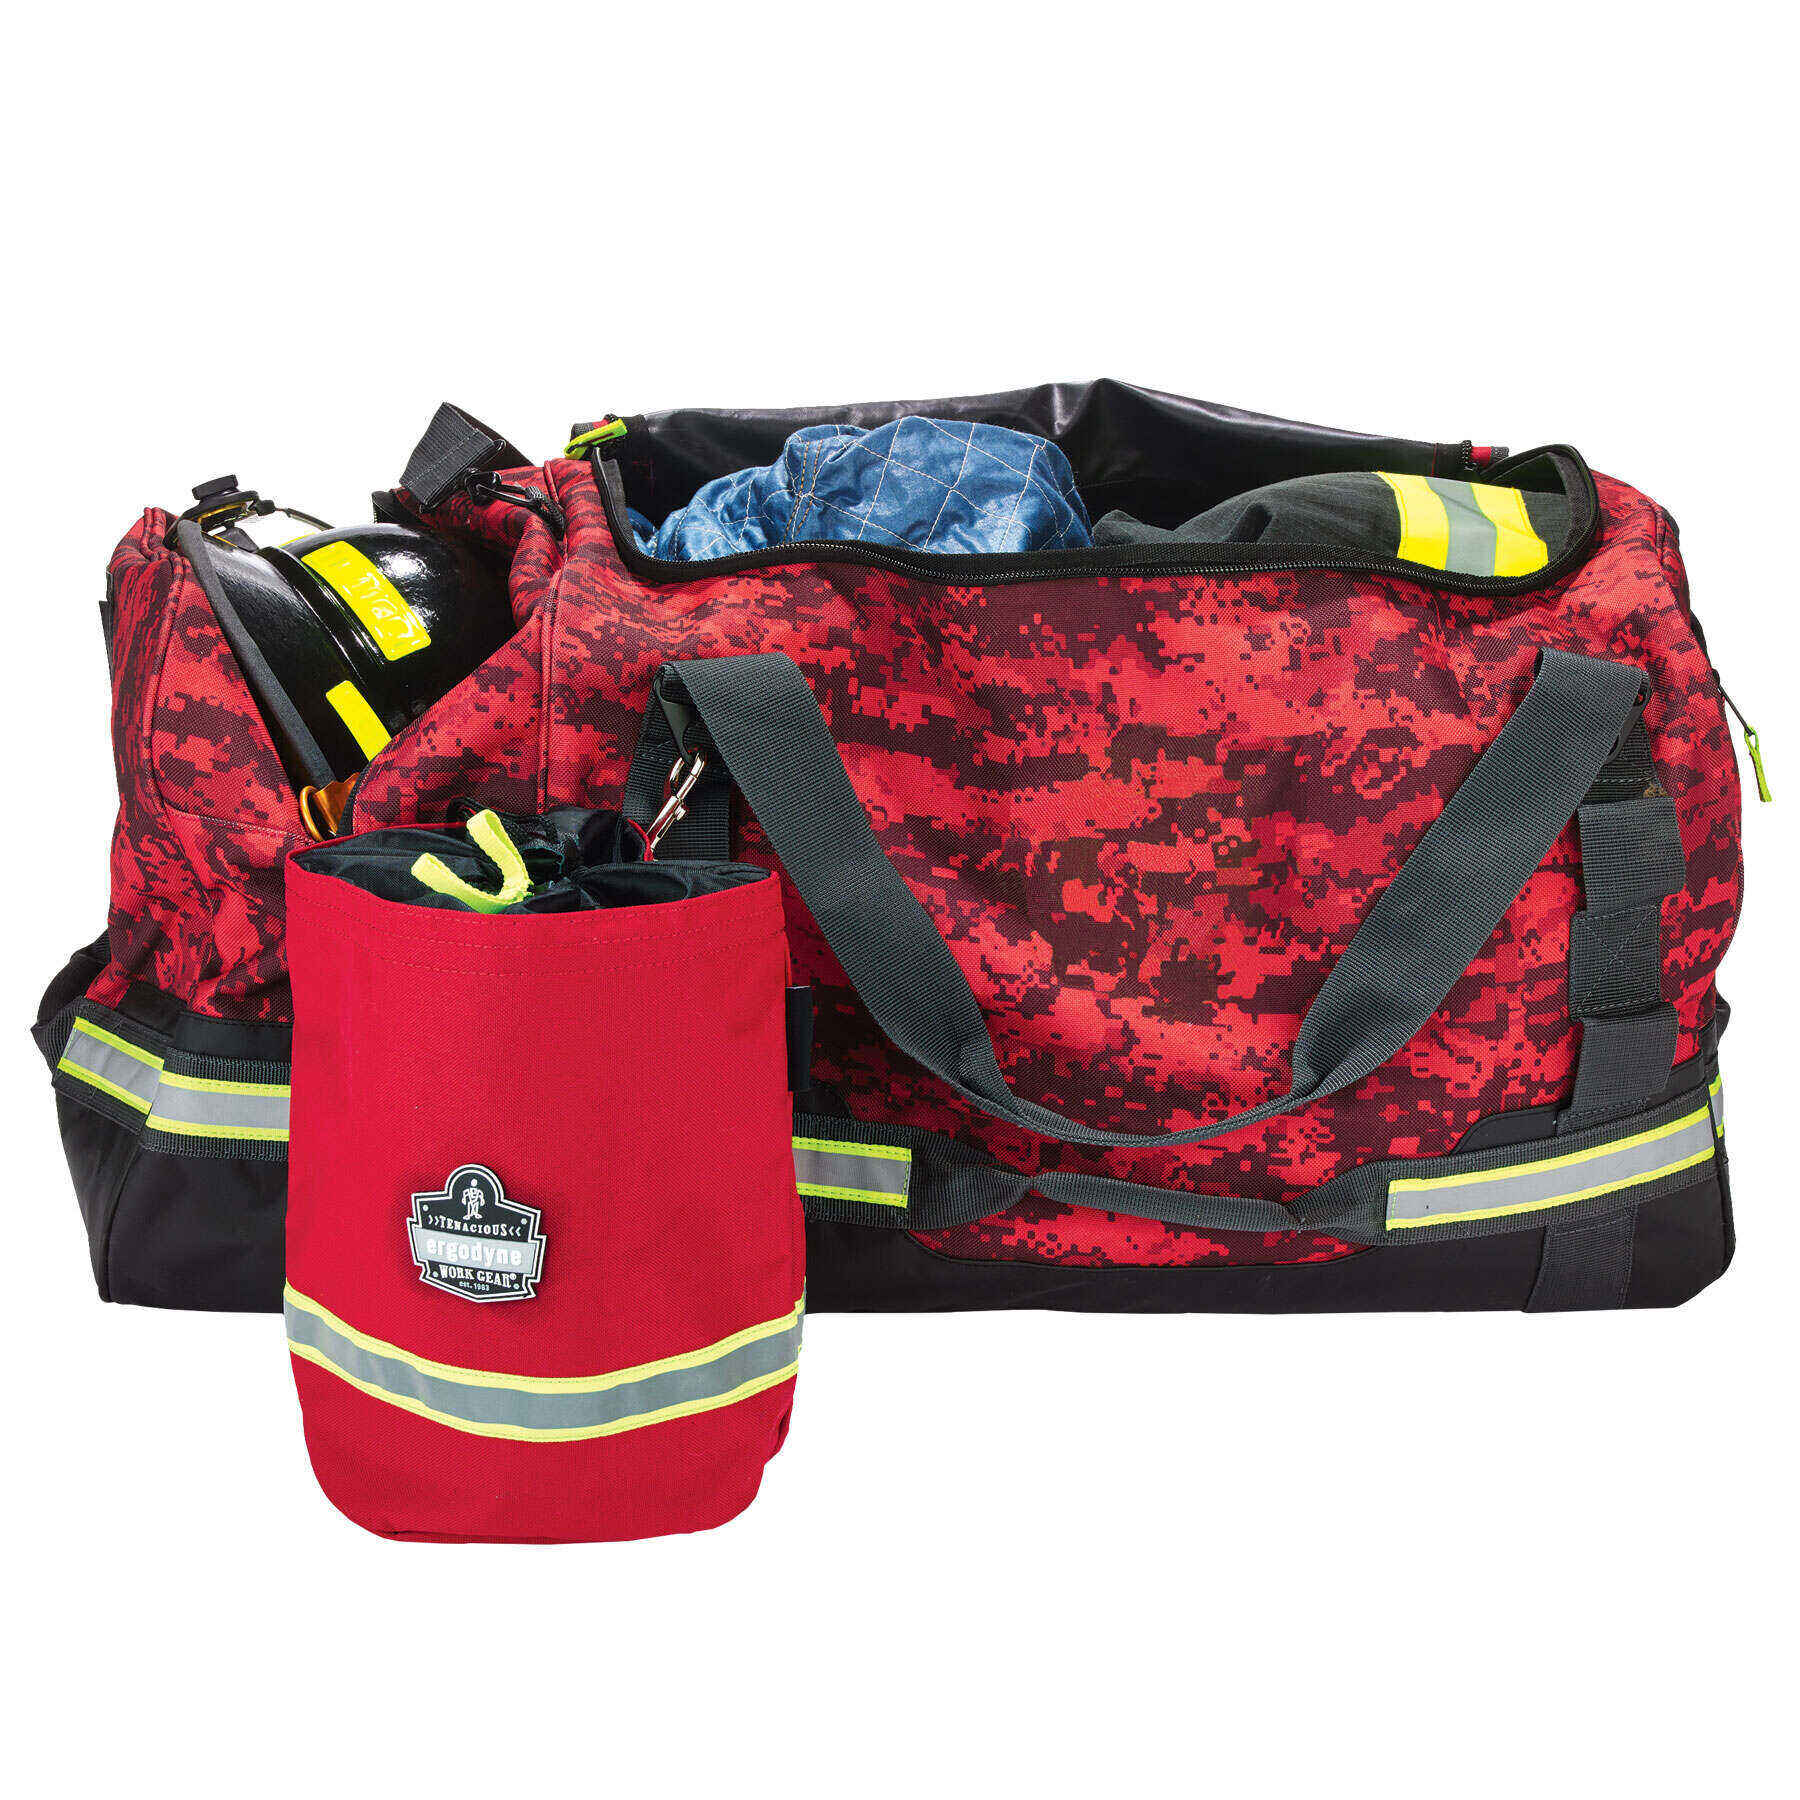 Firefighter Turnout Bag - Work Gear Duffel Bag, 126L